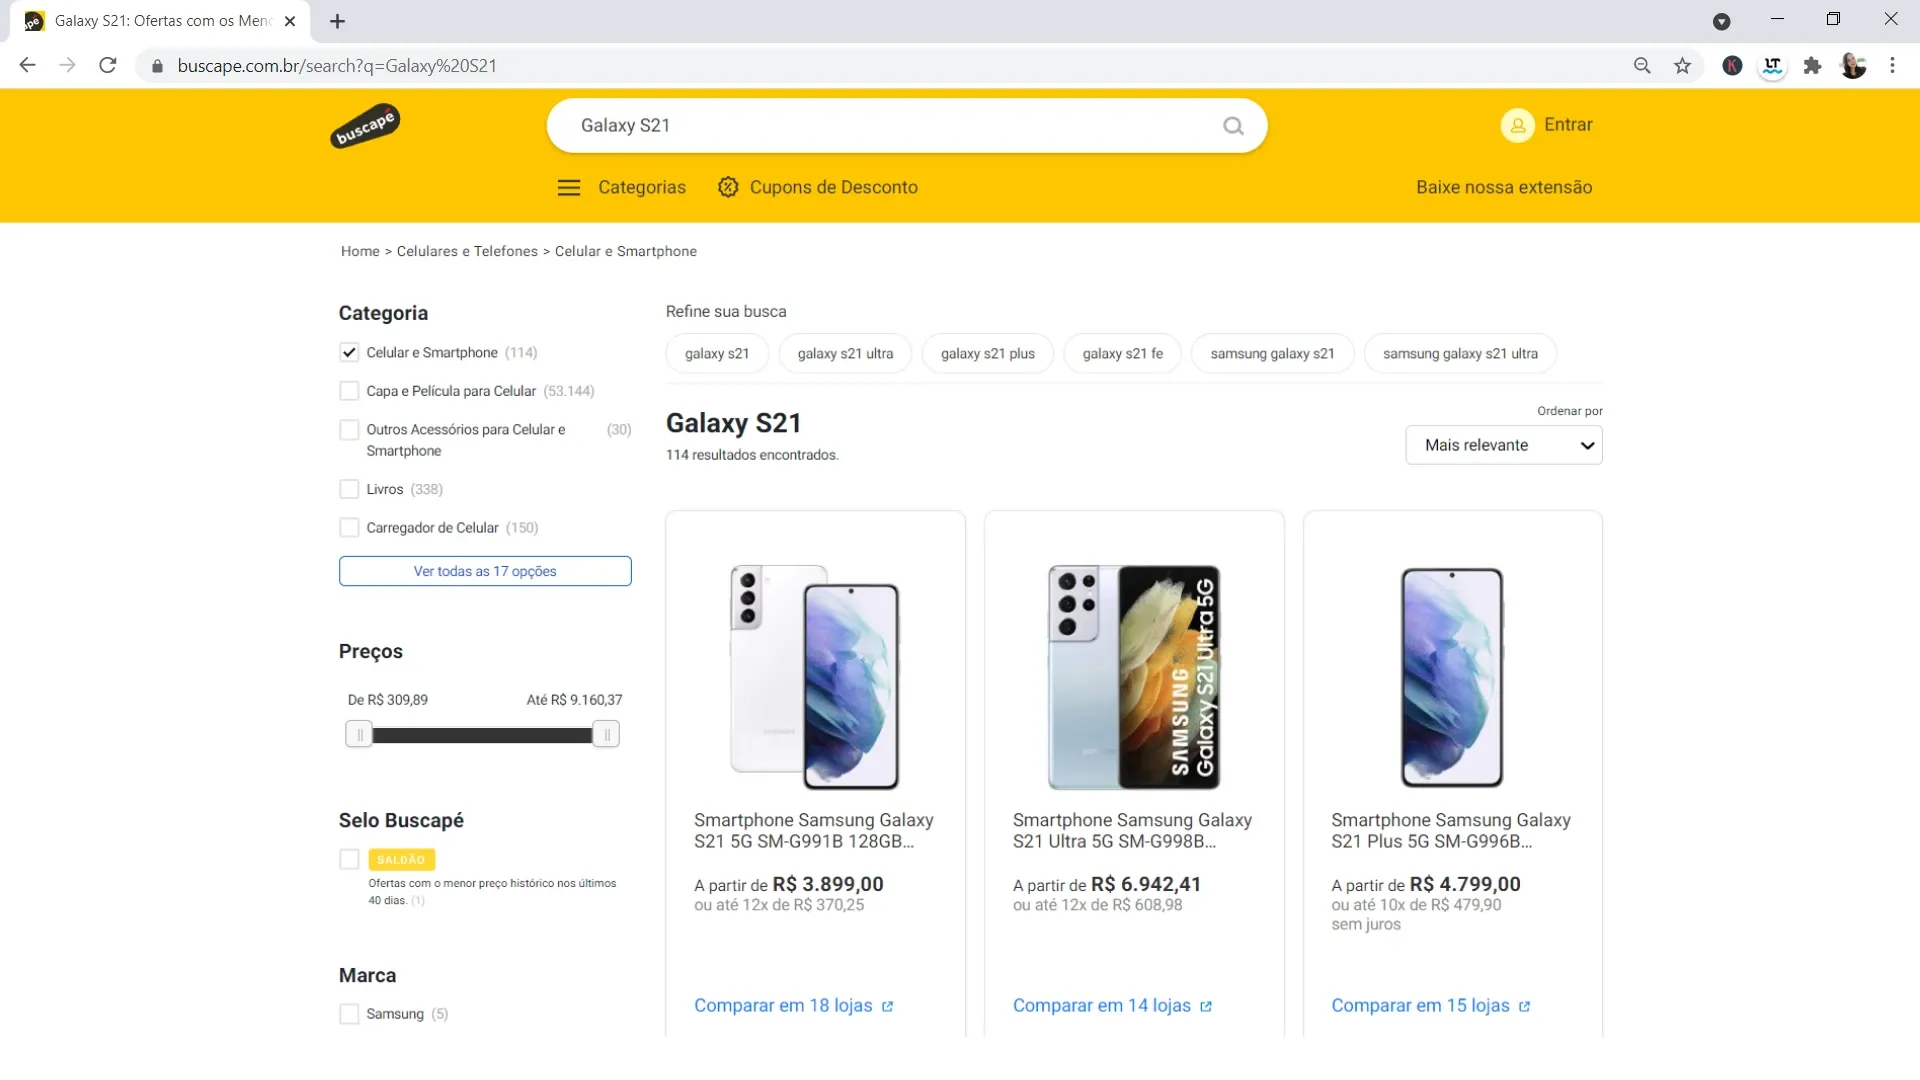 Página do site Buscapé com resultados da busca por Galaxy S21